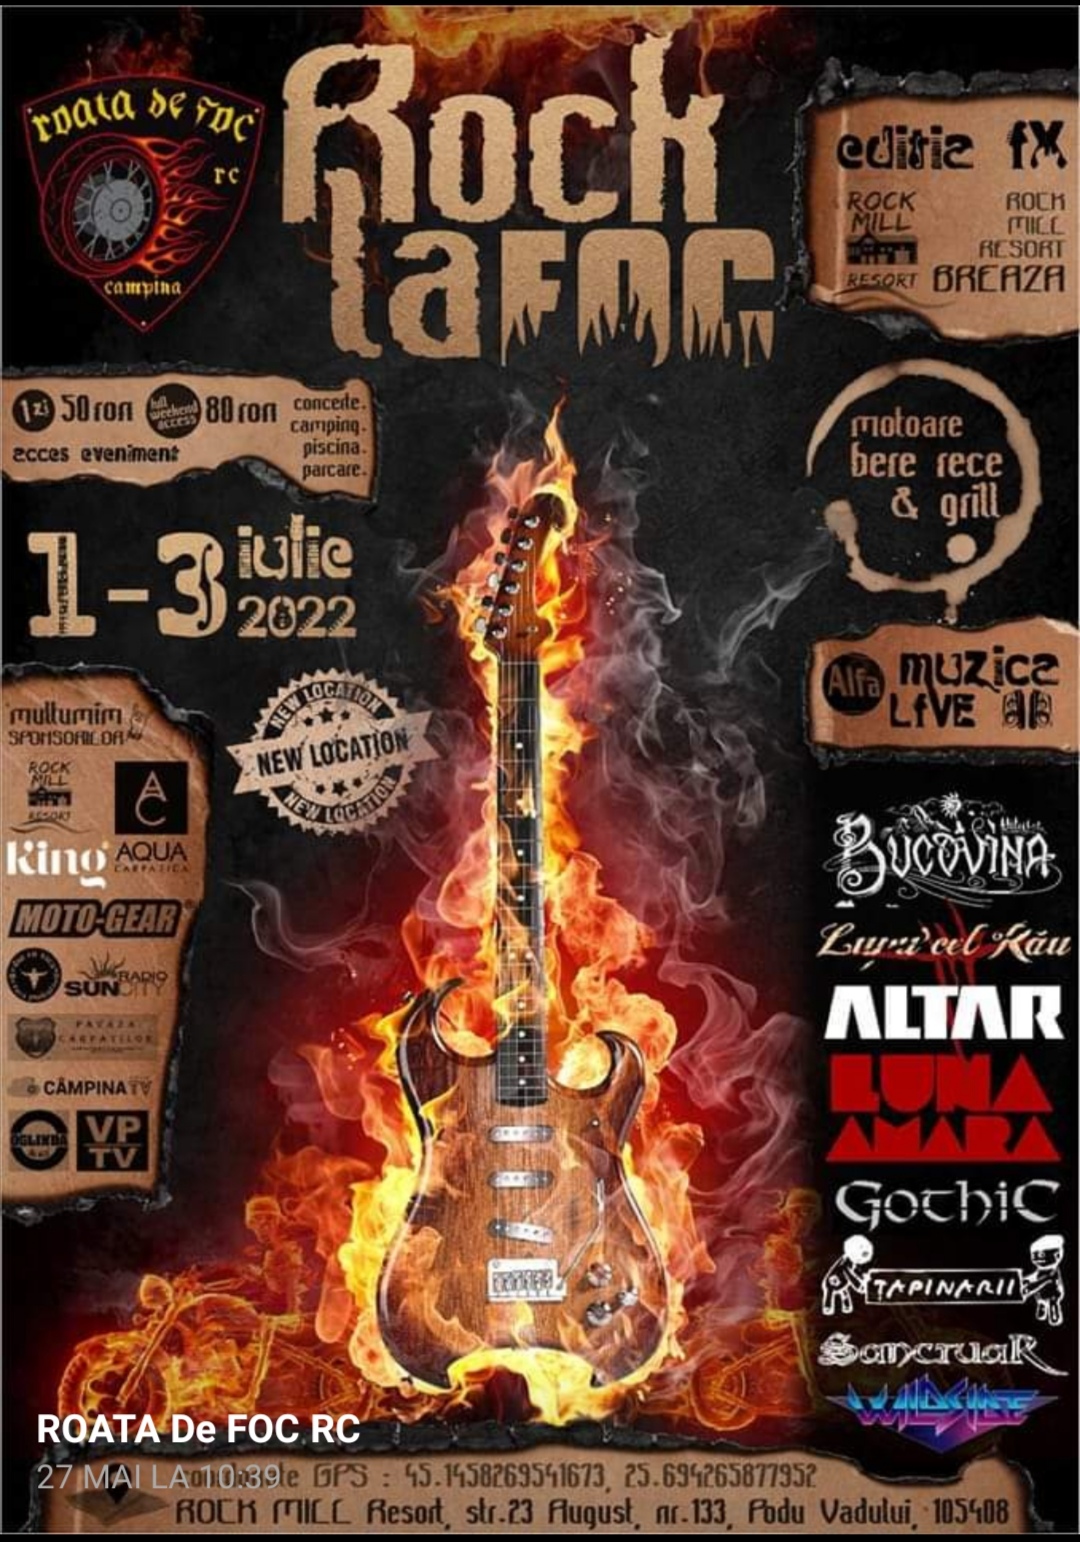 Sponsorizare Ediția a IX-a a festivalului  “Rock la Foc” organizată de Asociația Roata de Foc RC Câmpina: 01 – 03 iulie 2022